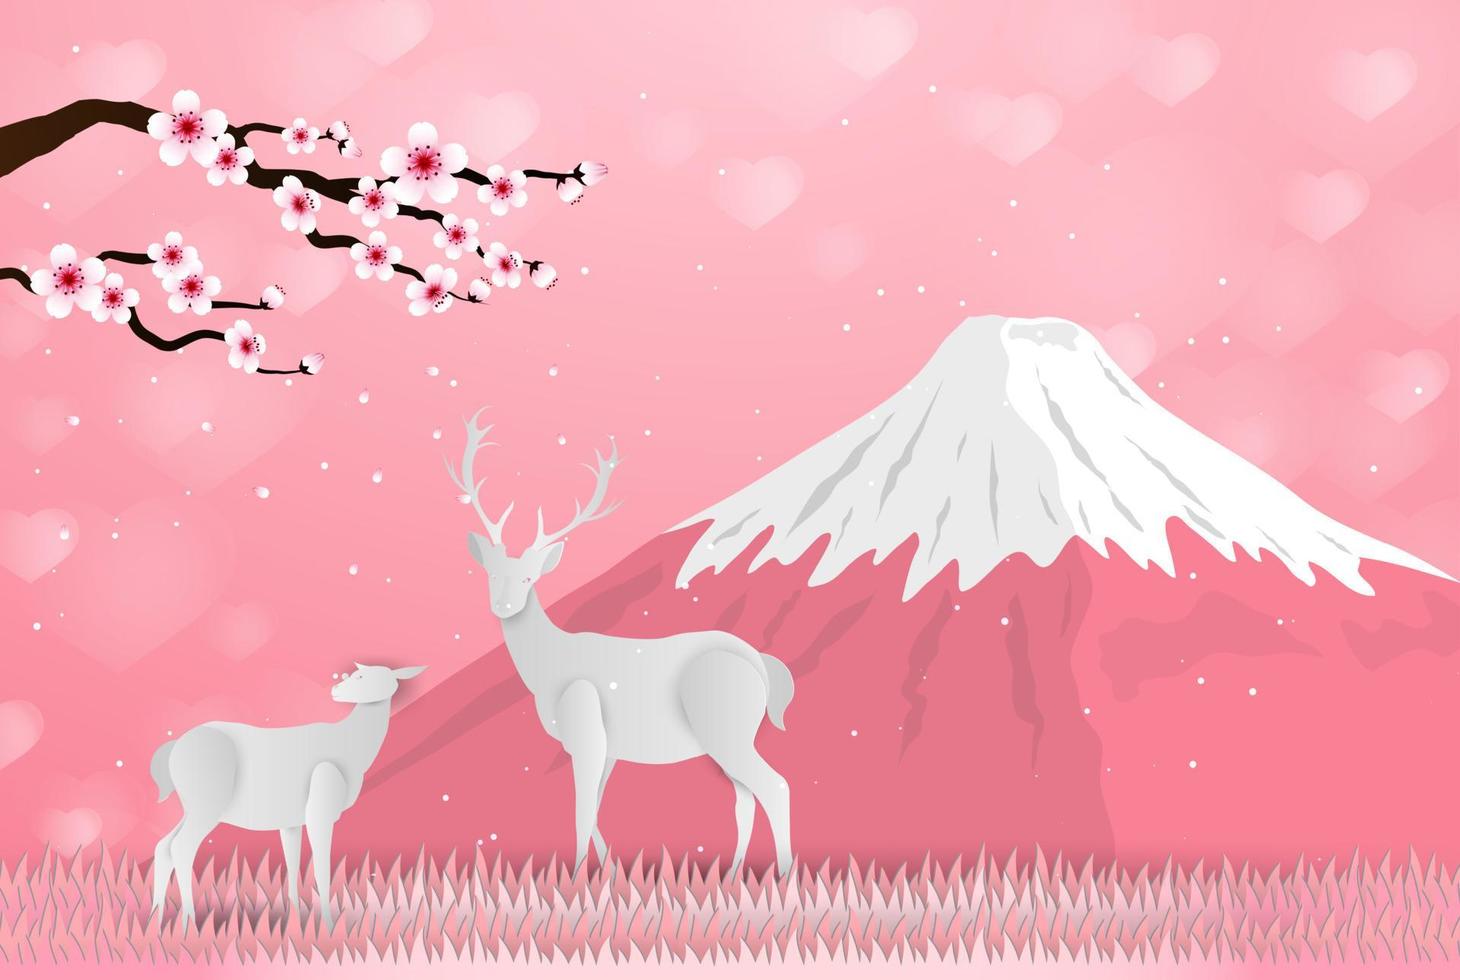 paper art sakura deer and mountain fuji vector